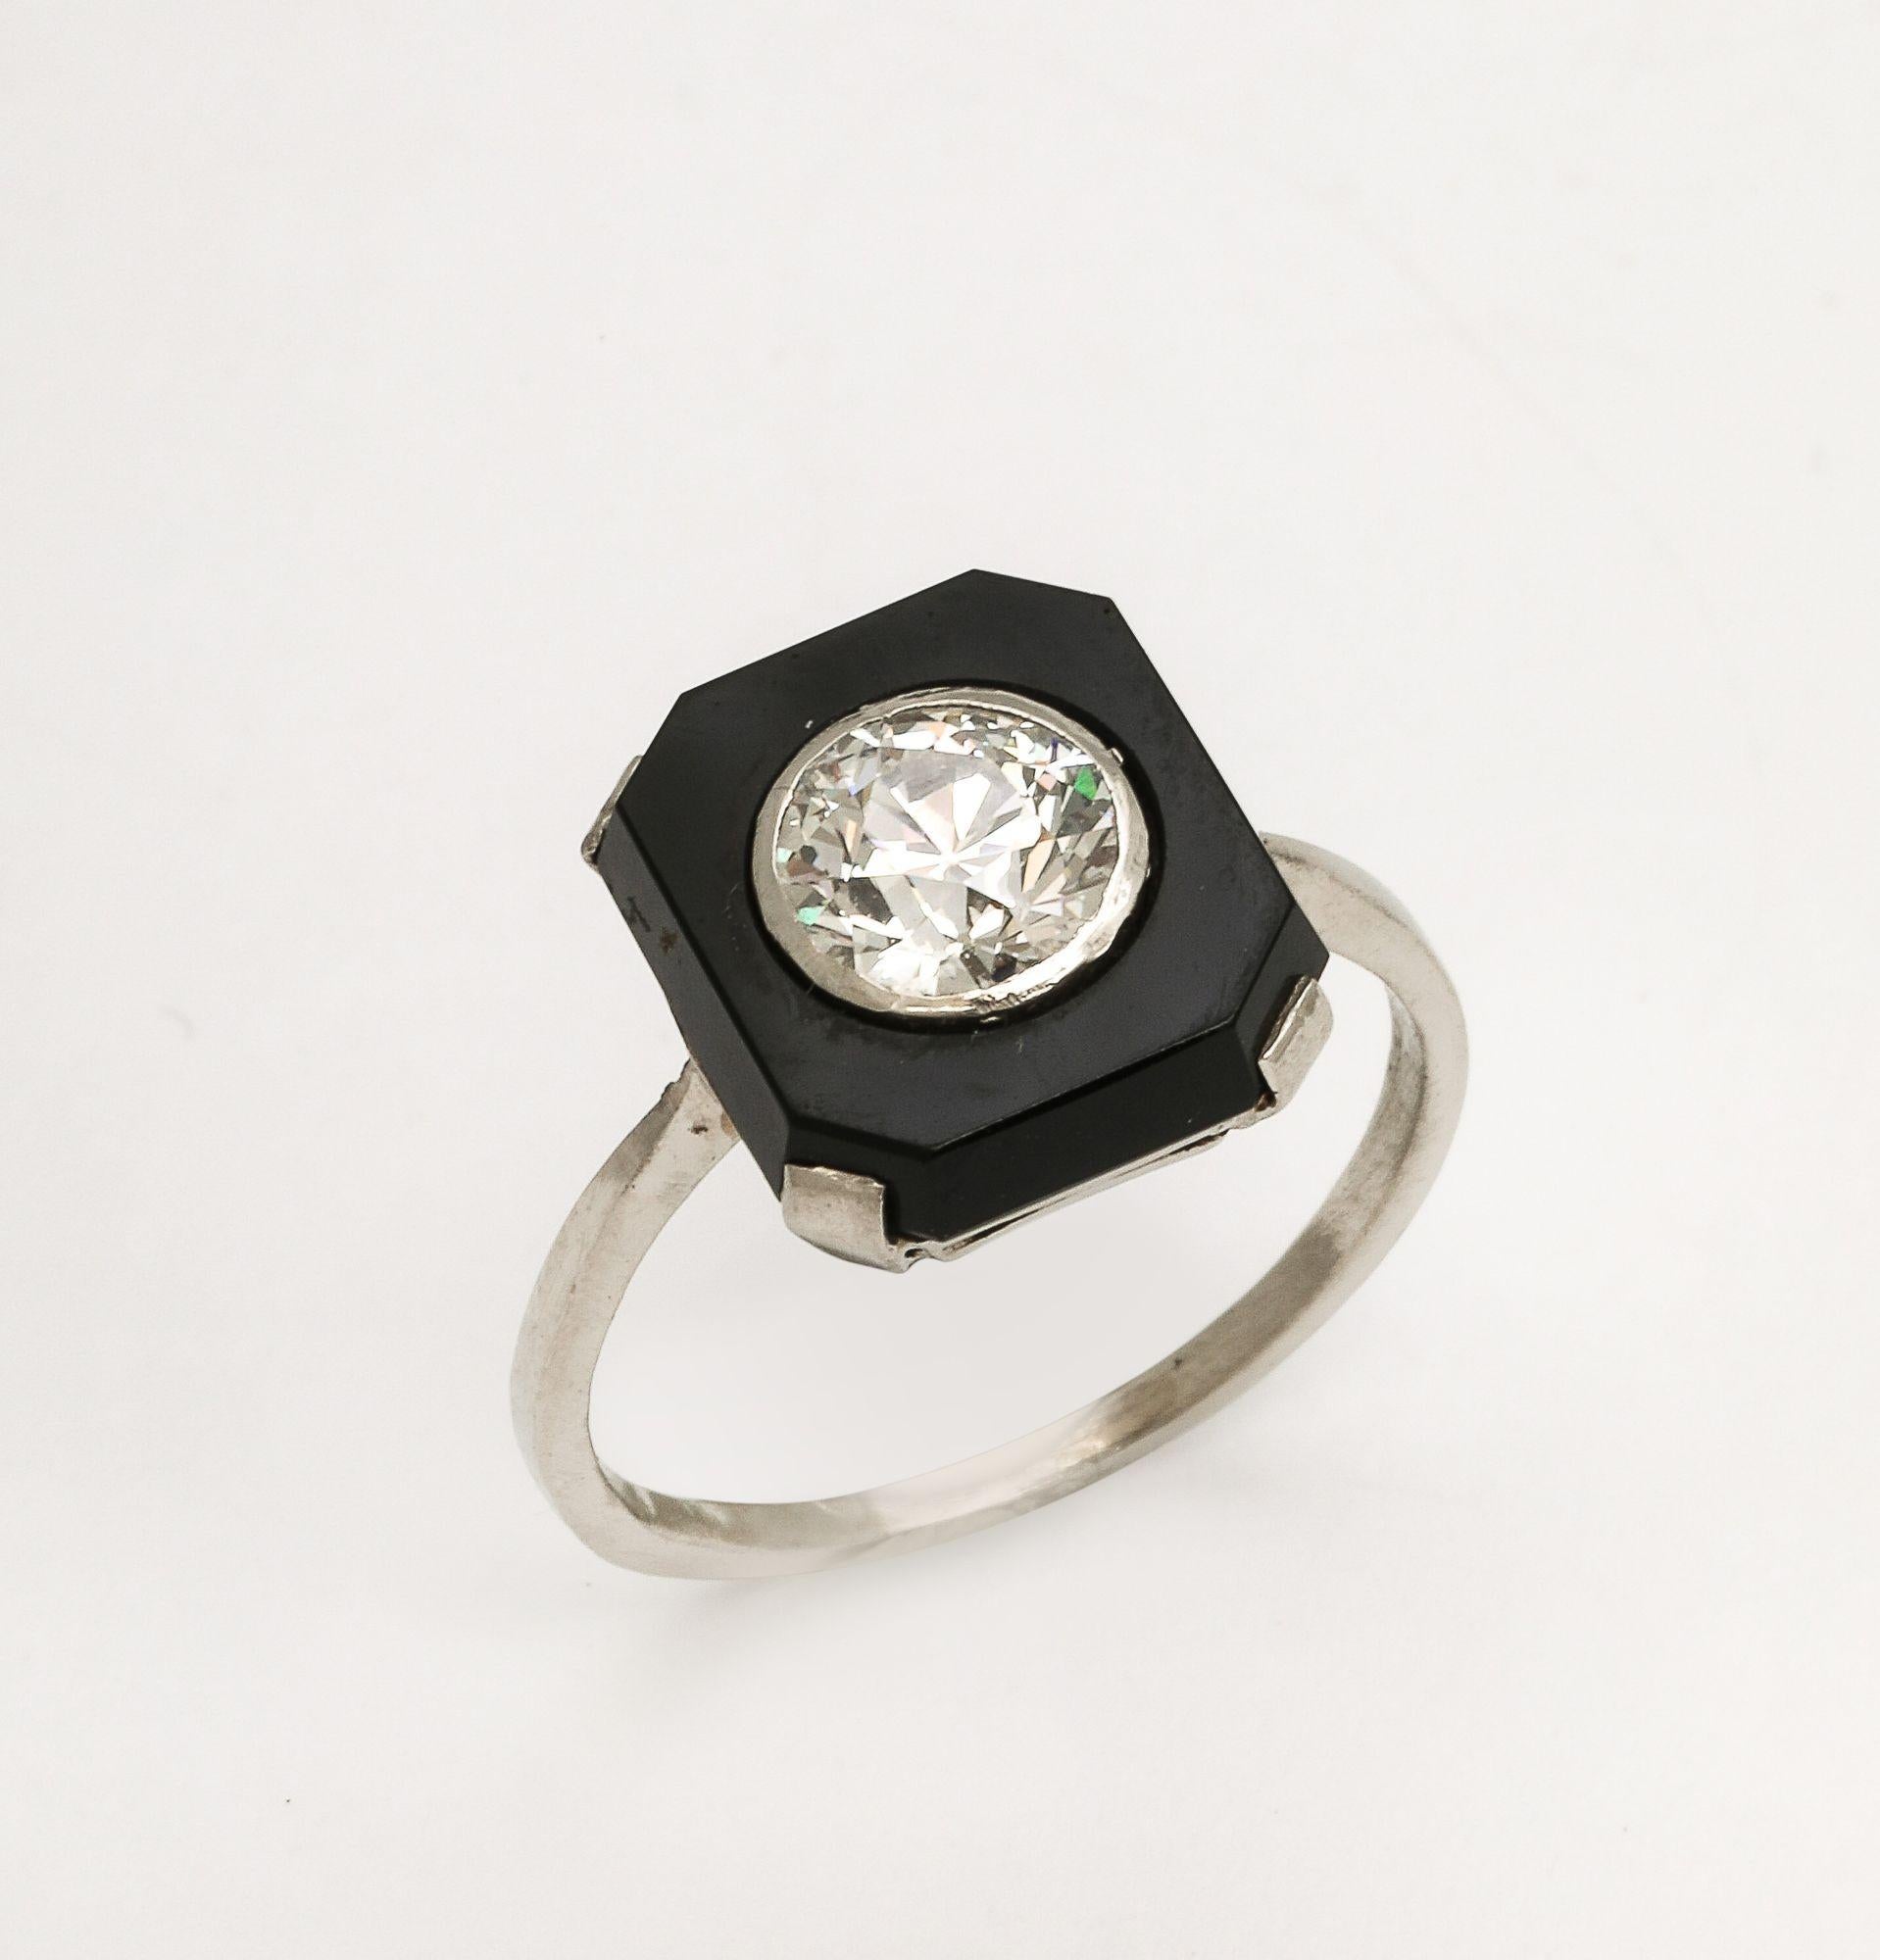 Ein wunderschöner Art Deco 1.10 ct Diamant und Onyx Platin Verlobungsring. Ein feiner 1,10-karätiger Diamant ist in ein Rechteck aus Onyx gefasst und auf ein Platinband montiert. Dieser Verlobungsring wird mit einem Wertgutachten geliefert.